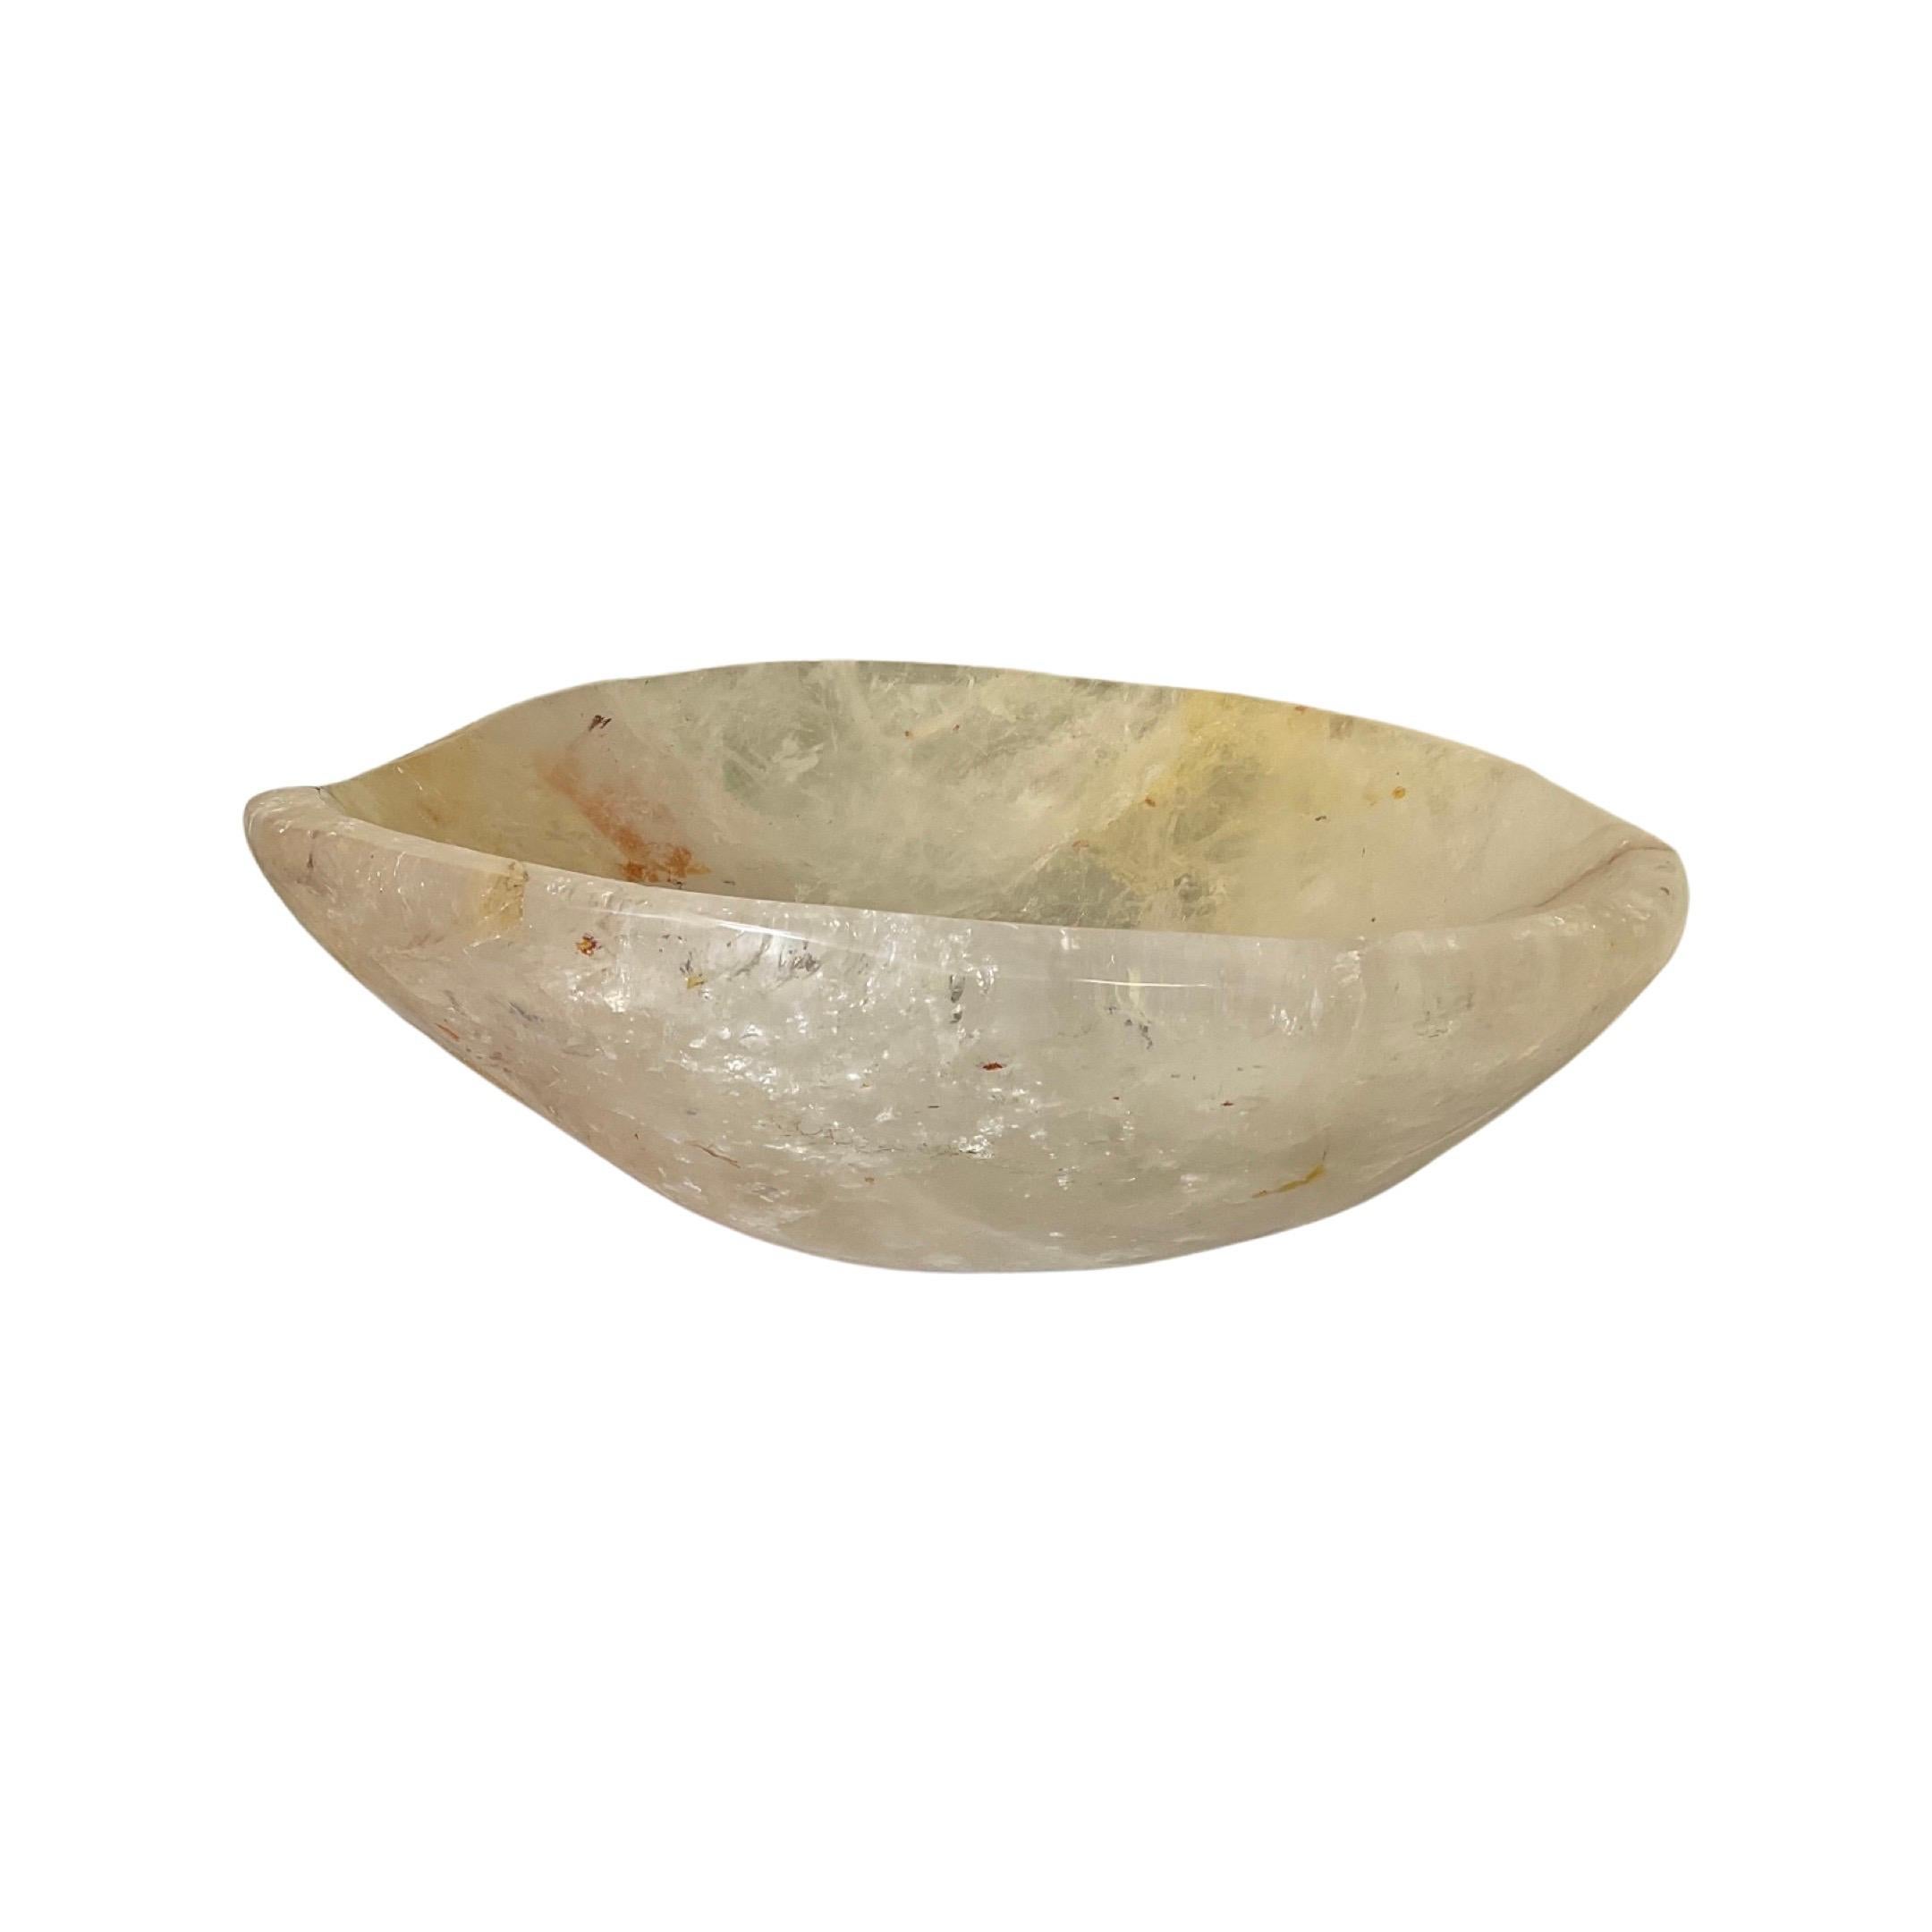 Cette vasque en cristal de roche brésilien poli, fabriquée en 2010, ajoute de la sophistication à toute salle de bains. Il constitue un point de mire élégant et offre à la fois une valeur esthétique et une longévité accrue. Ce superbe lavabo vous